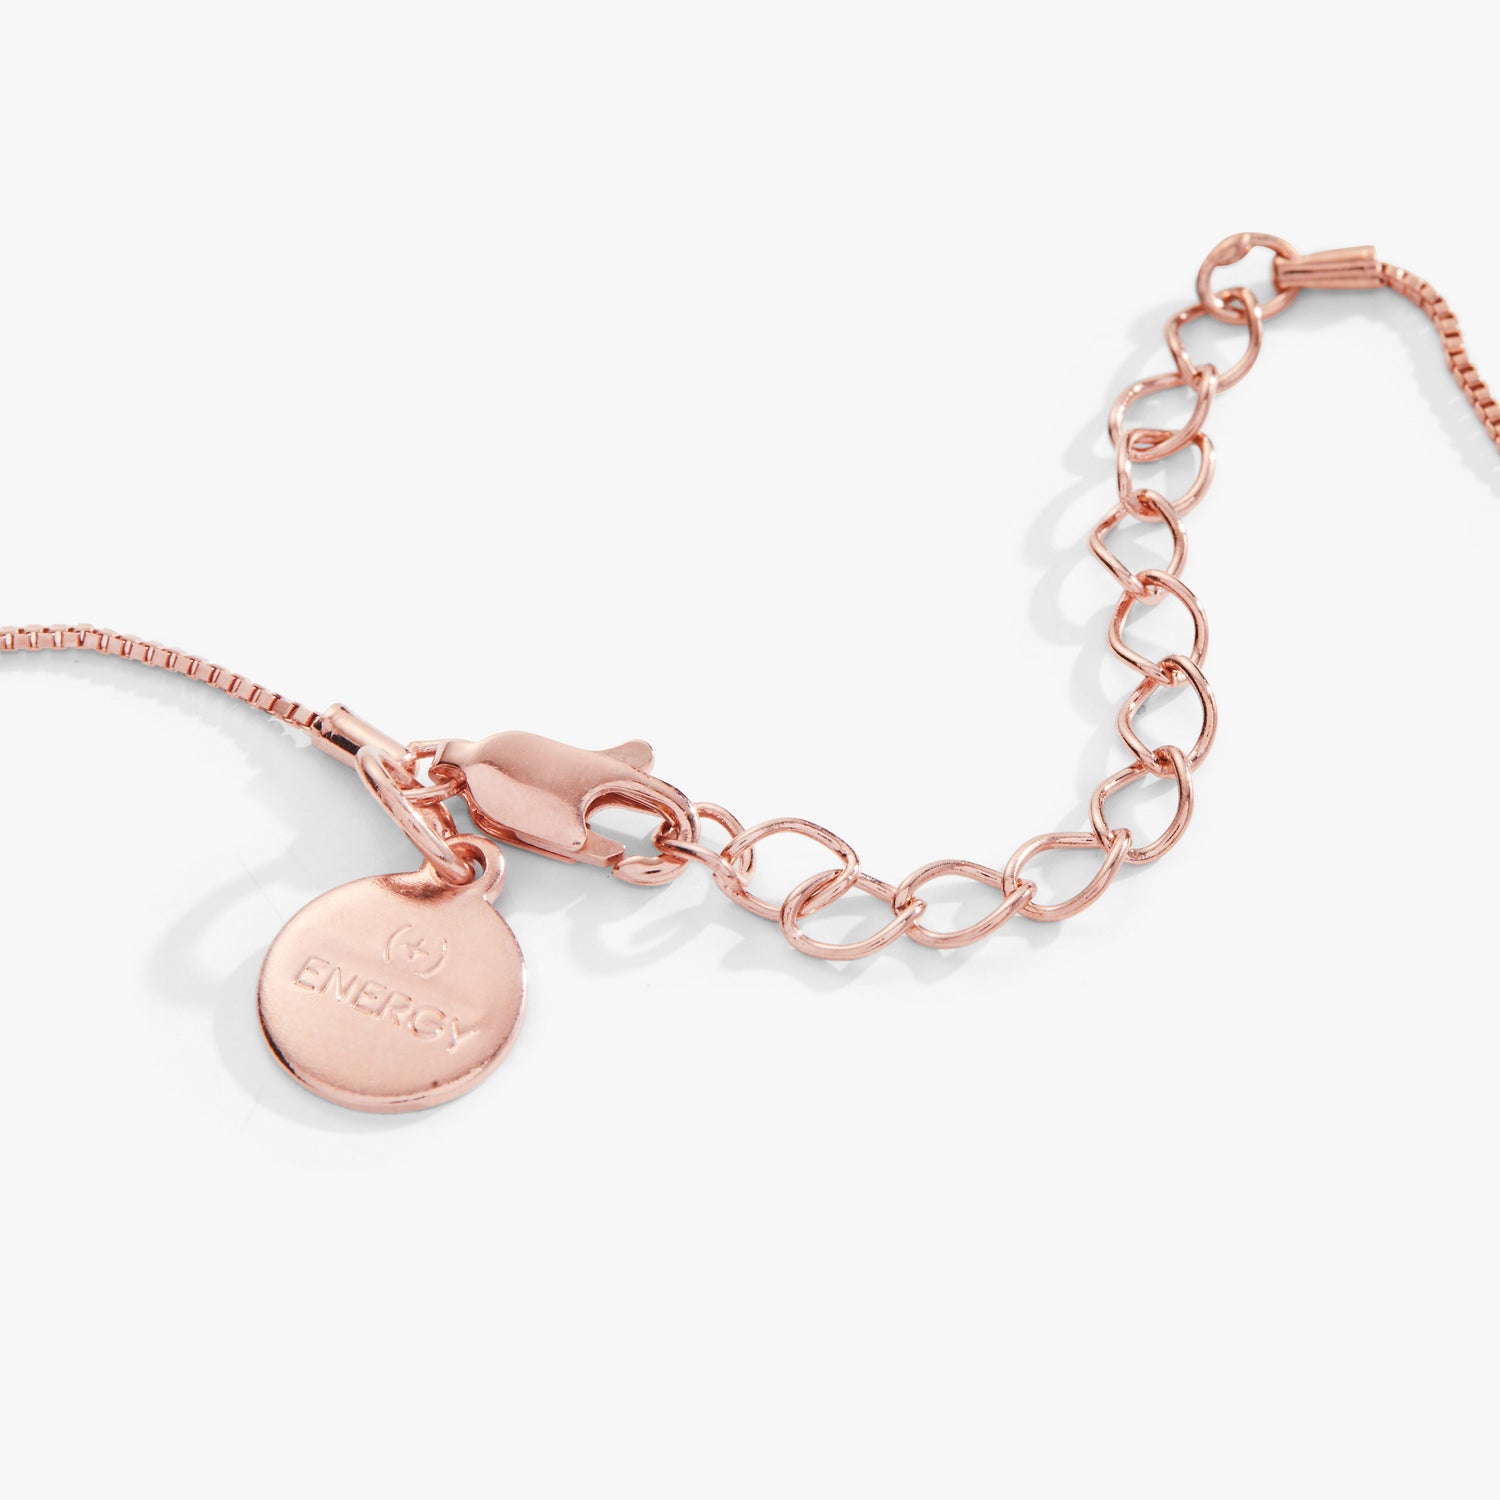 Engravable Circle Charm + Rose Quartz Bead Necklace